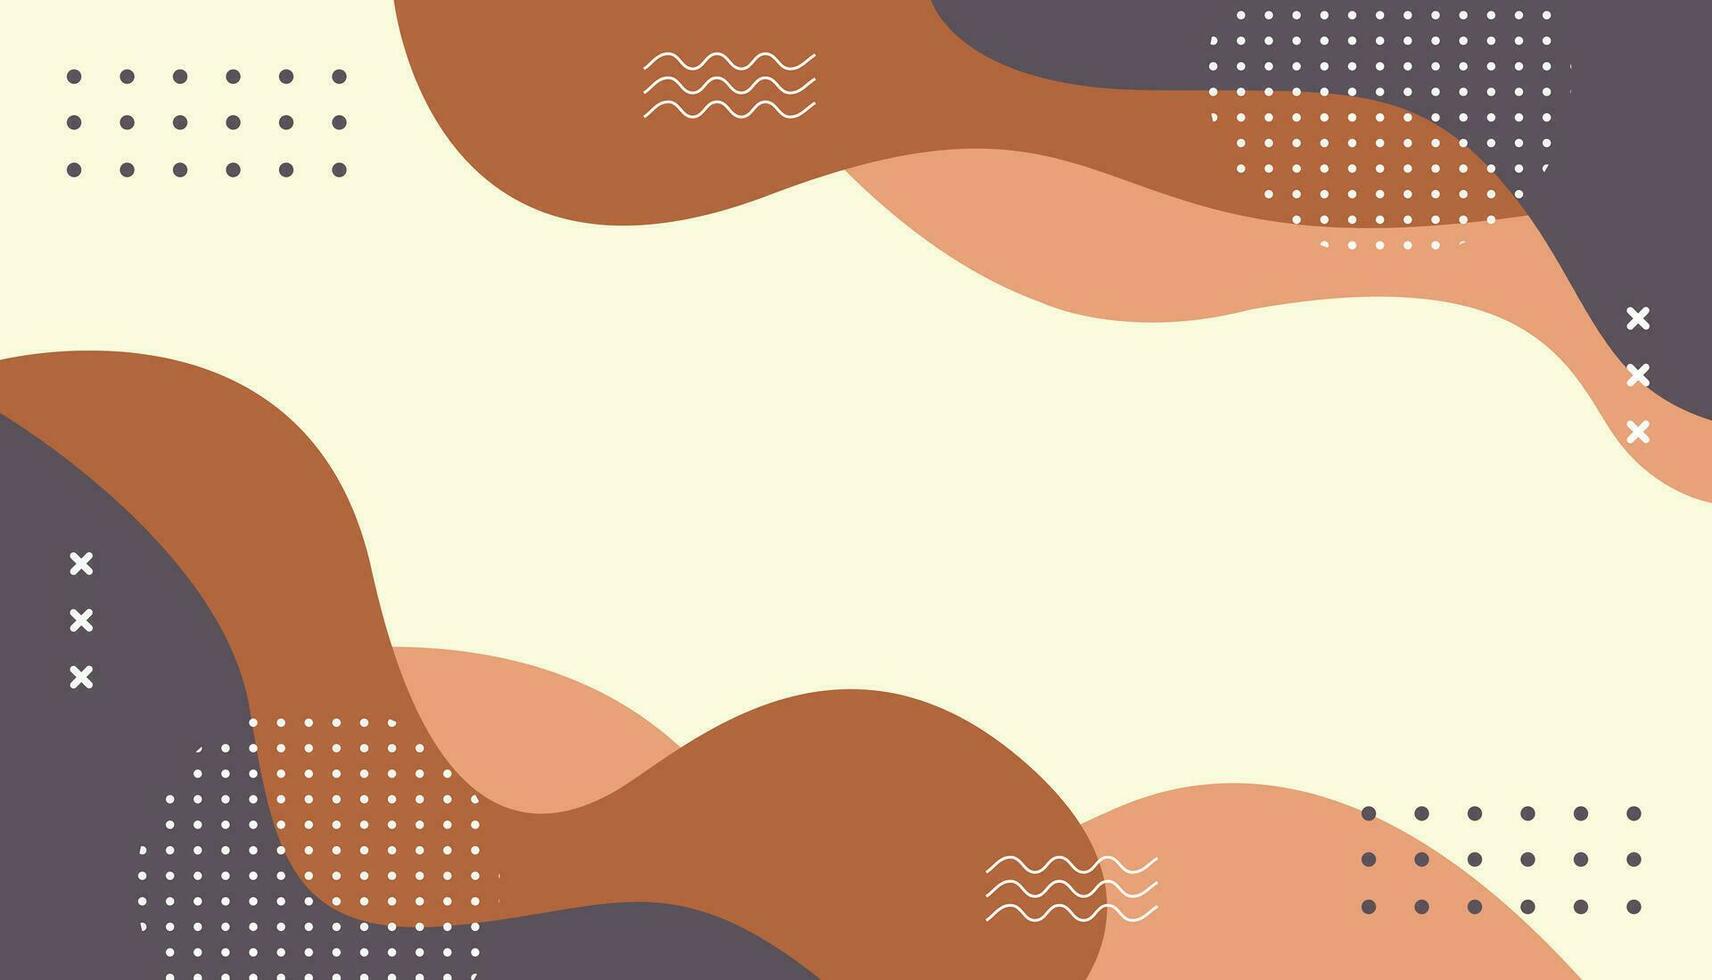 abstrakt bakgrund minimalistisk, ritad för hand med geometrisk och organisk former i annorlunda nyanser av brun. enkel trendig platt vektor illustration